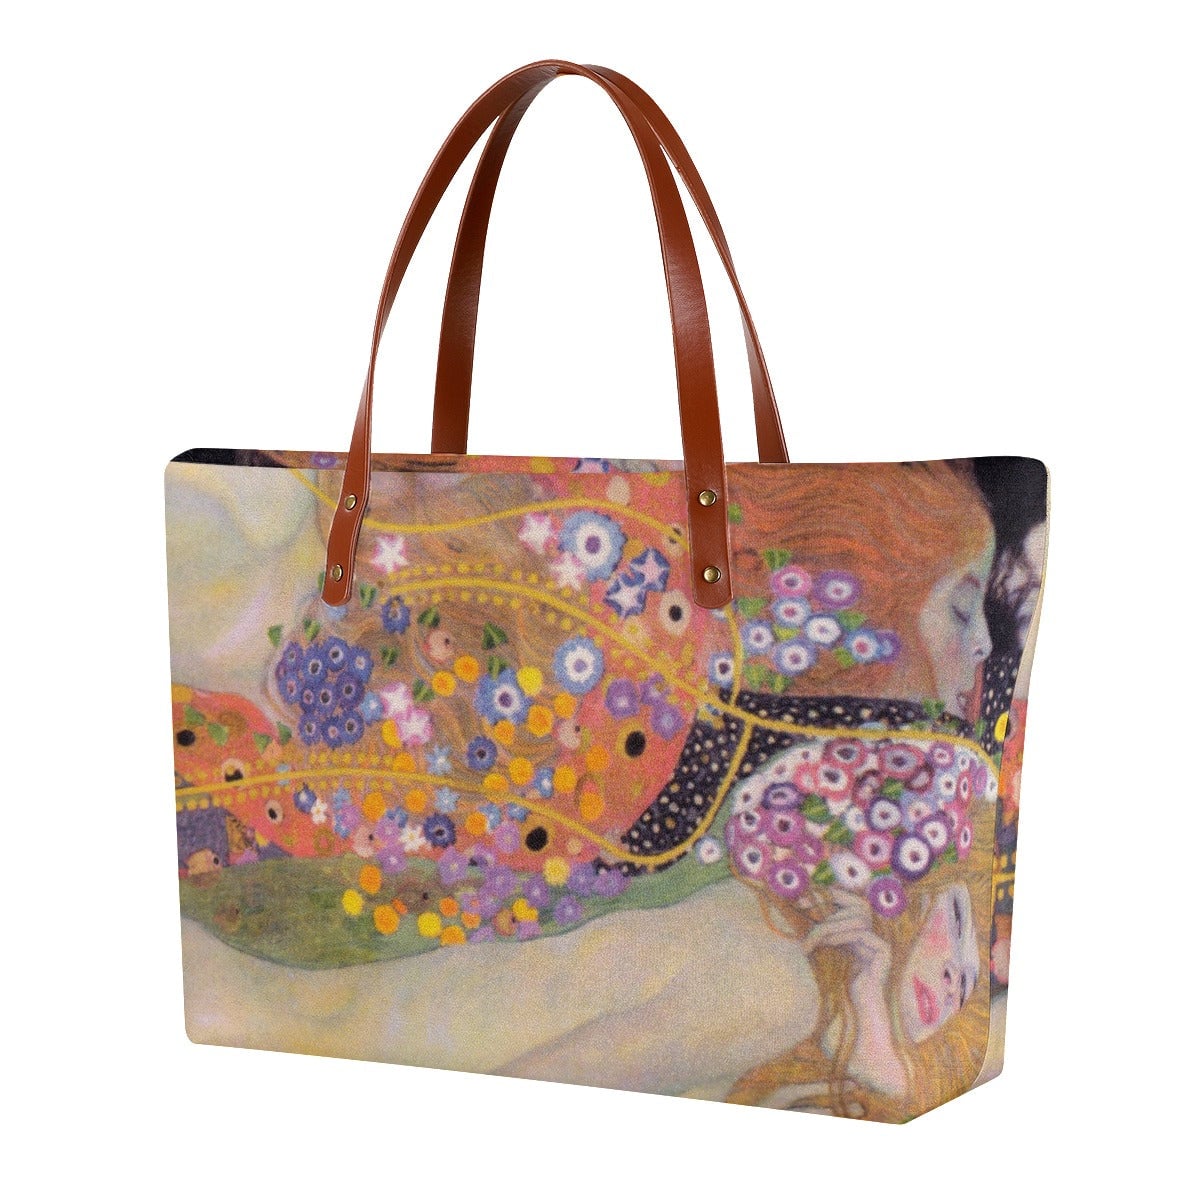 Water Serpents II by Gustav Klimt Painting Waterproof Tote Bag